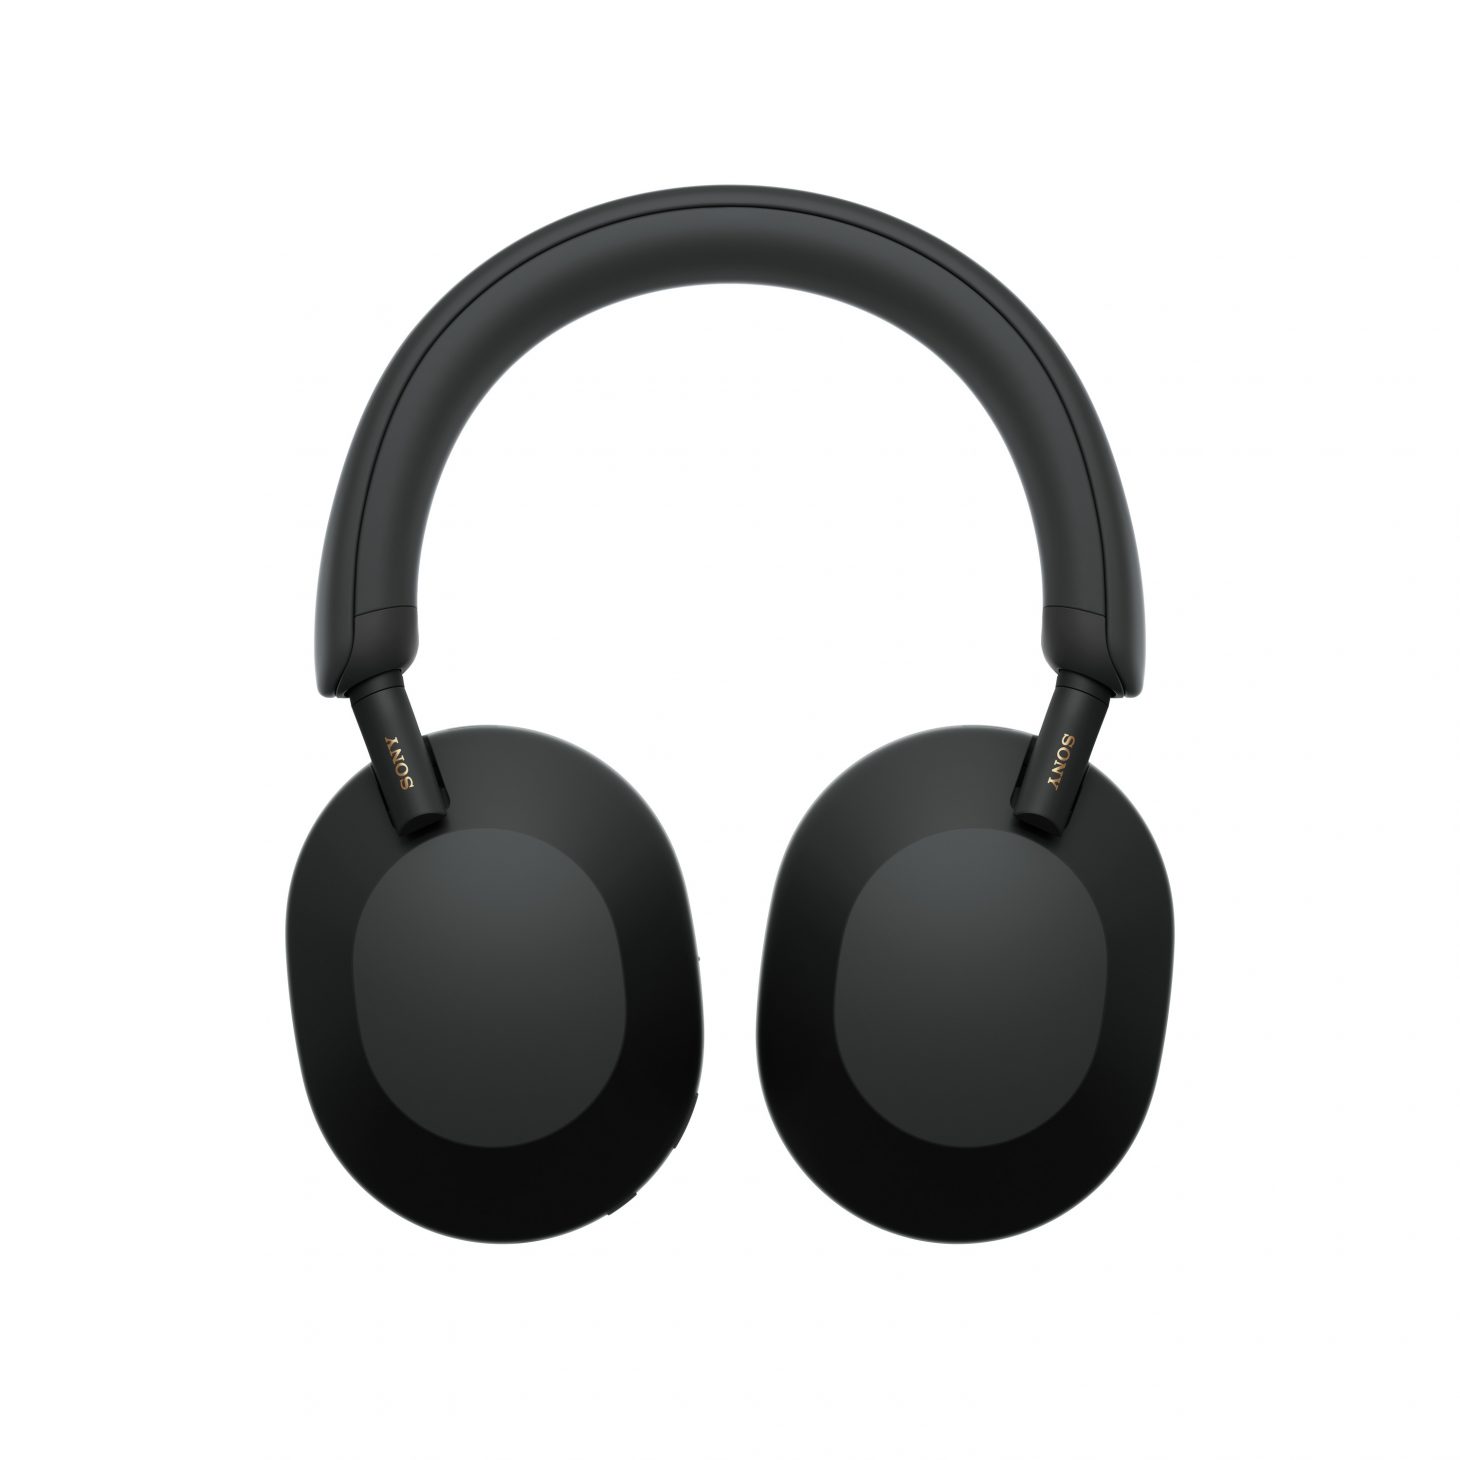 Sony ra tai nghe WH-1000XM5 tai nghe chống ồn thế hệ mới - 4 WH 1000XM5 swivel black Large